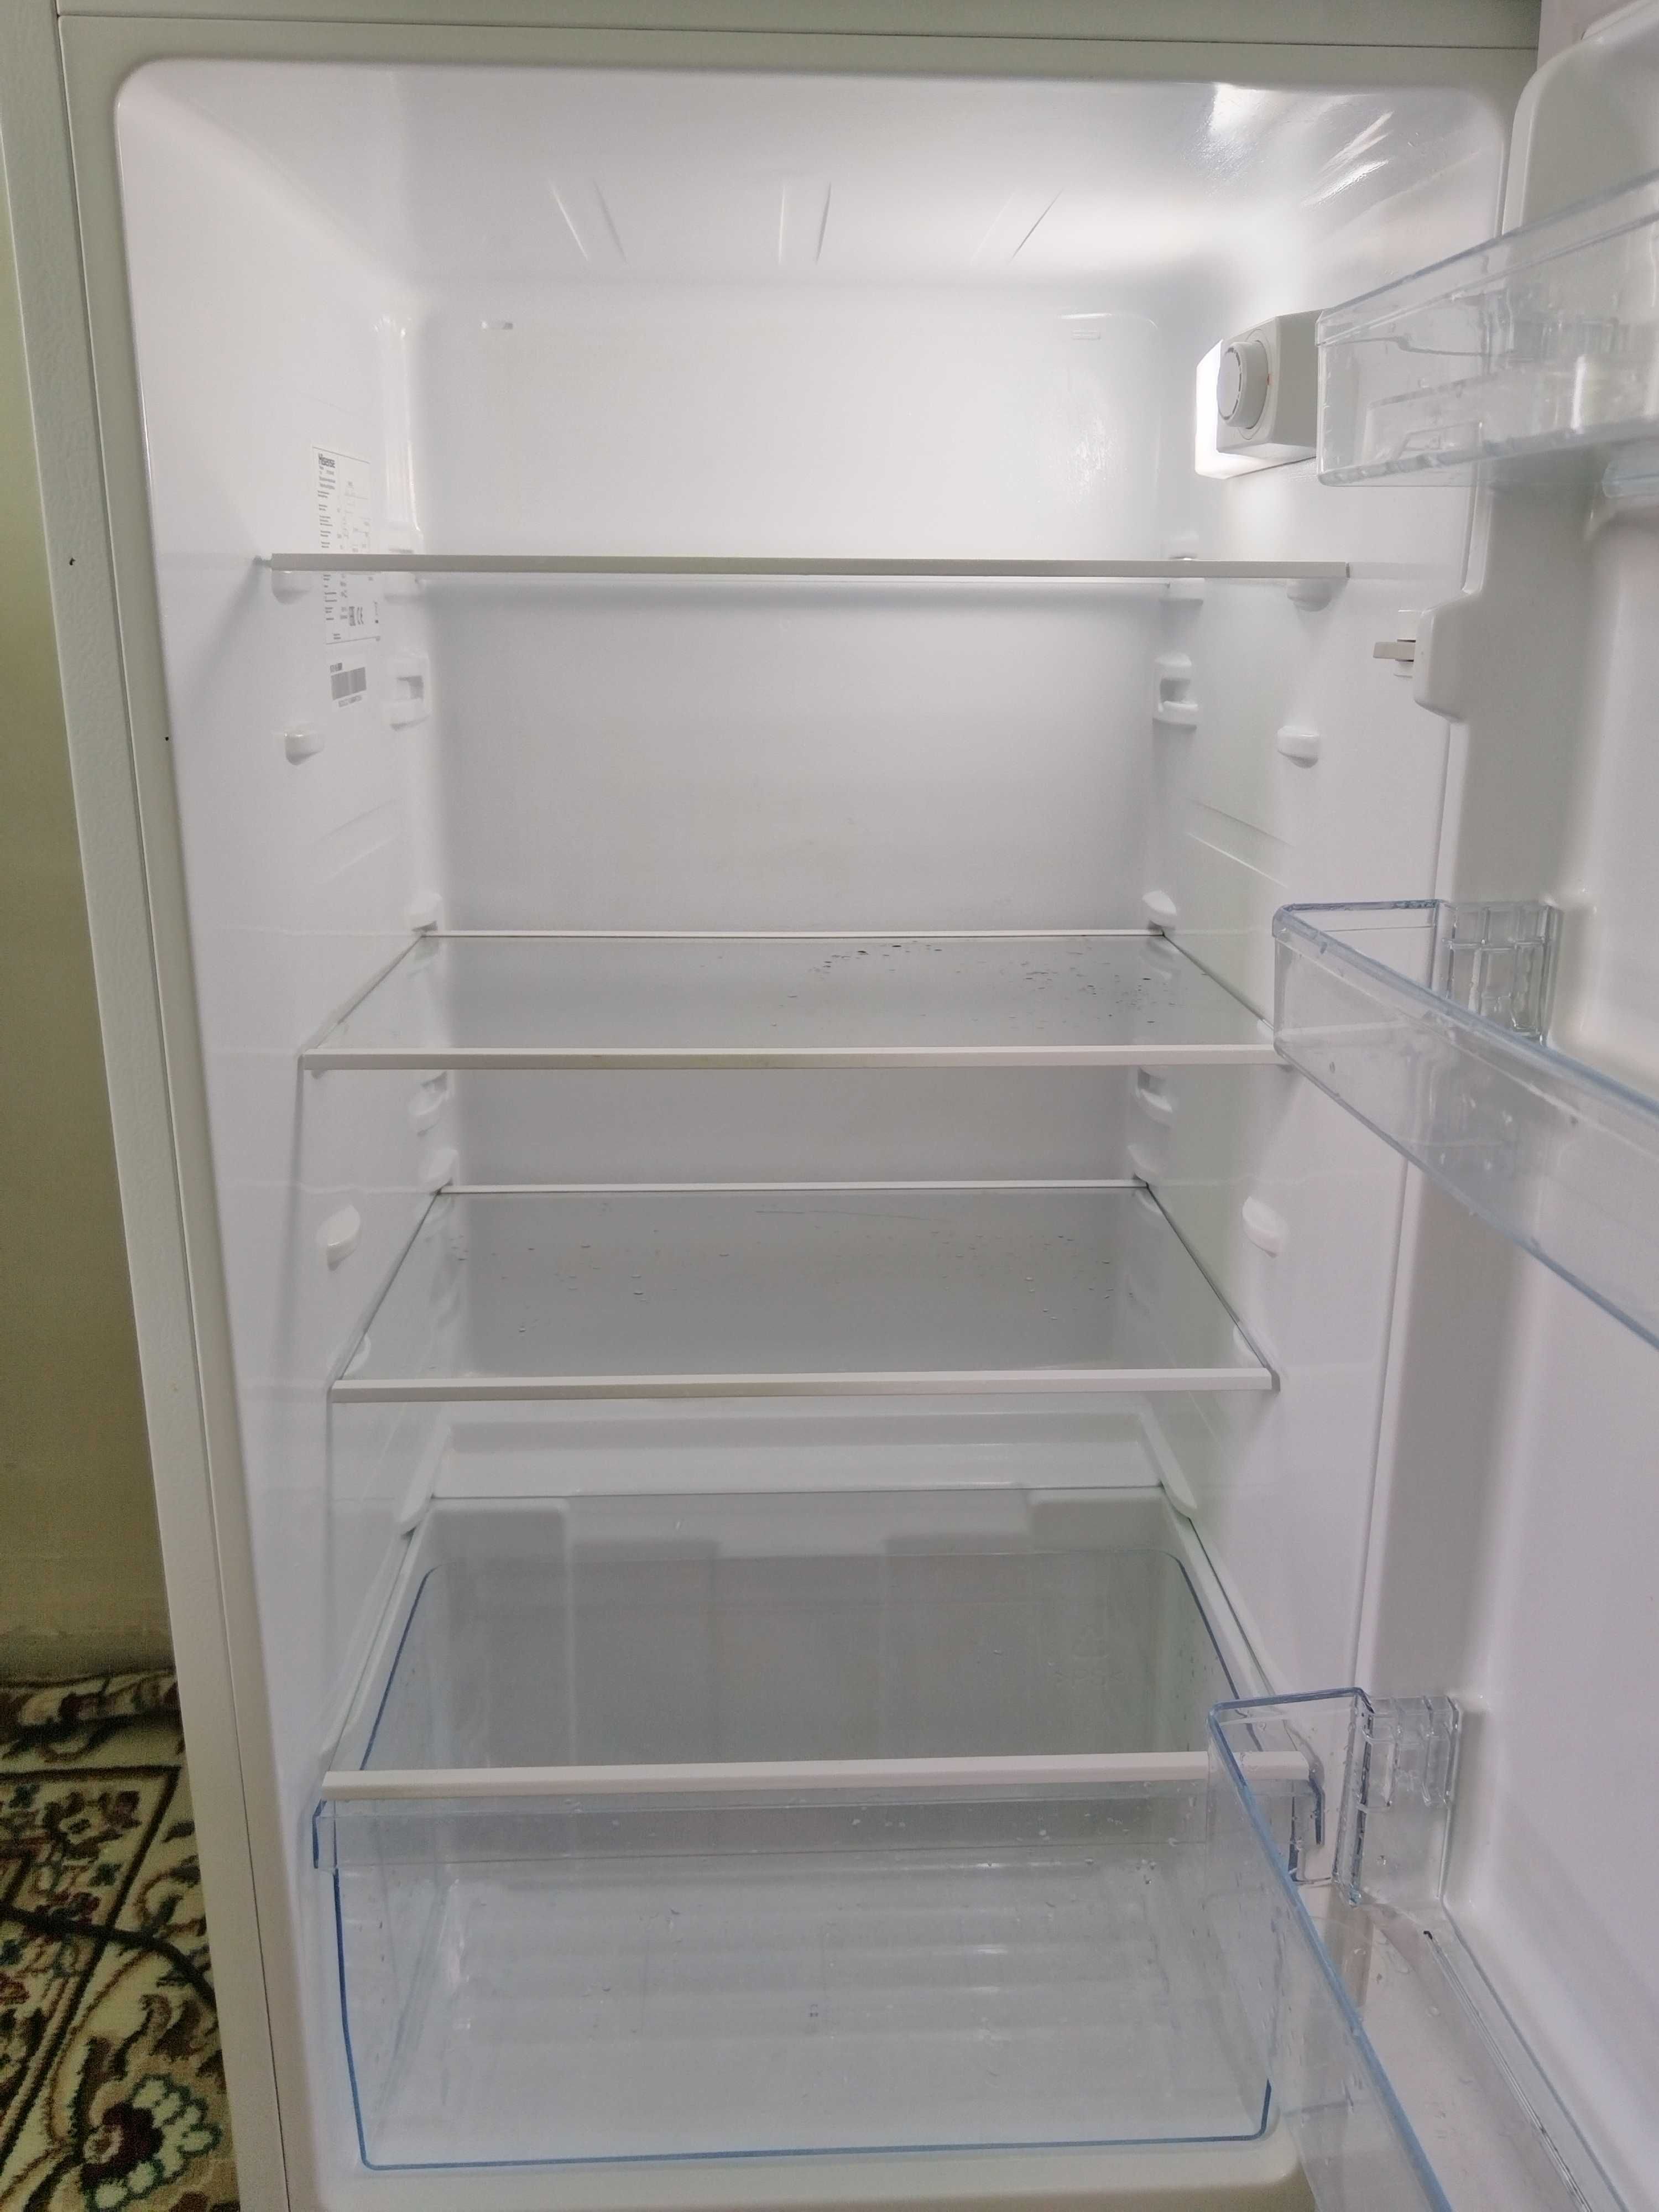 Продам холодильник почти новый